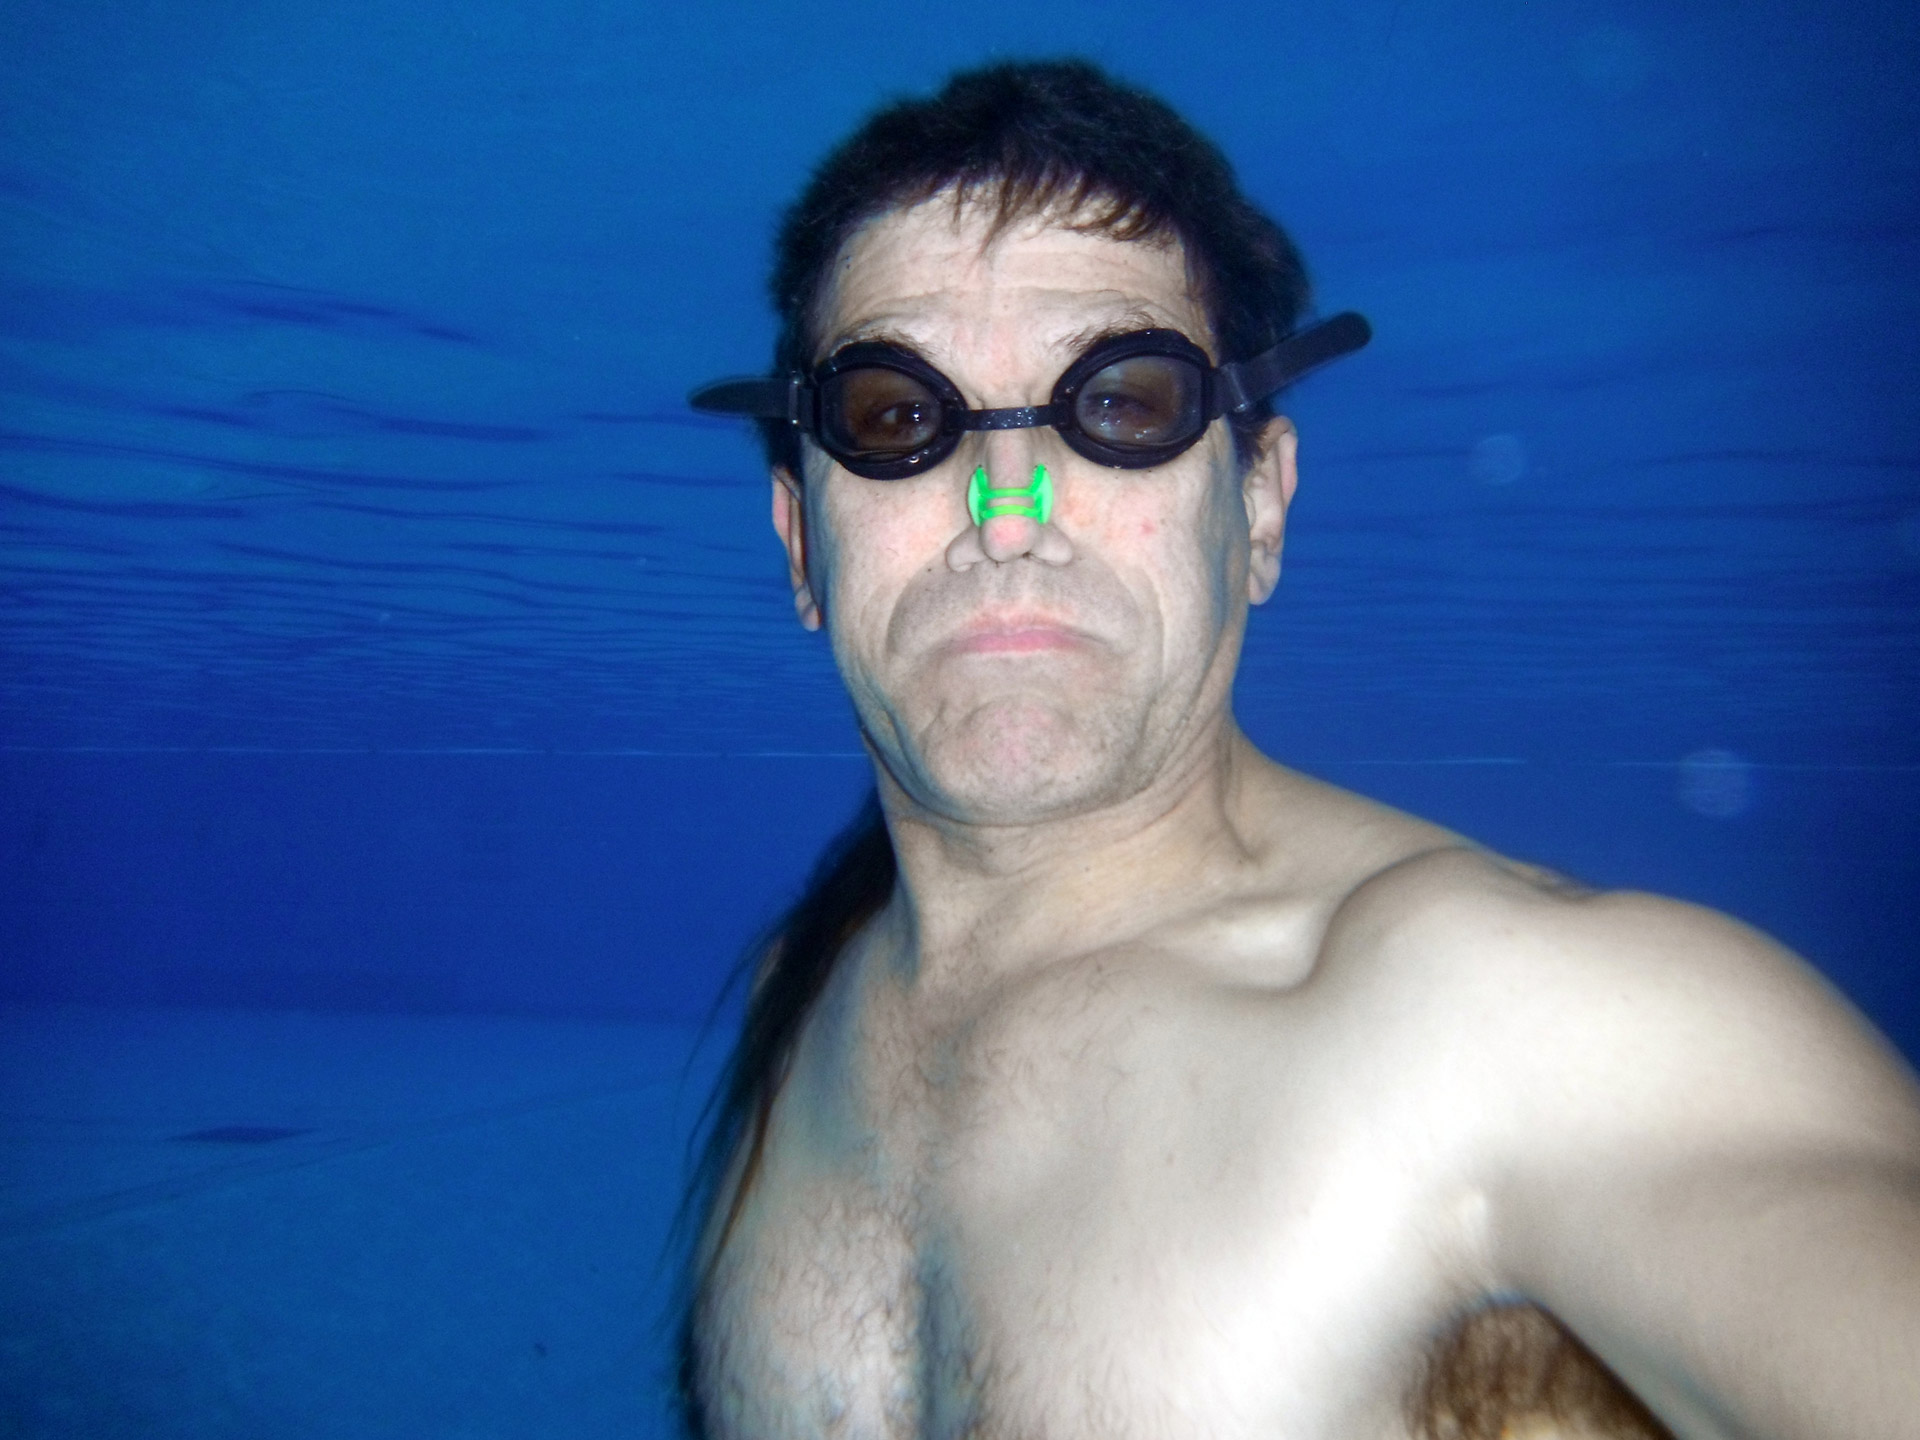 underwater swimming man free photo